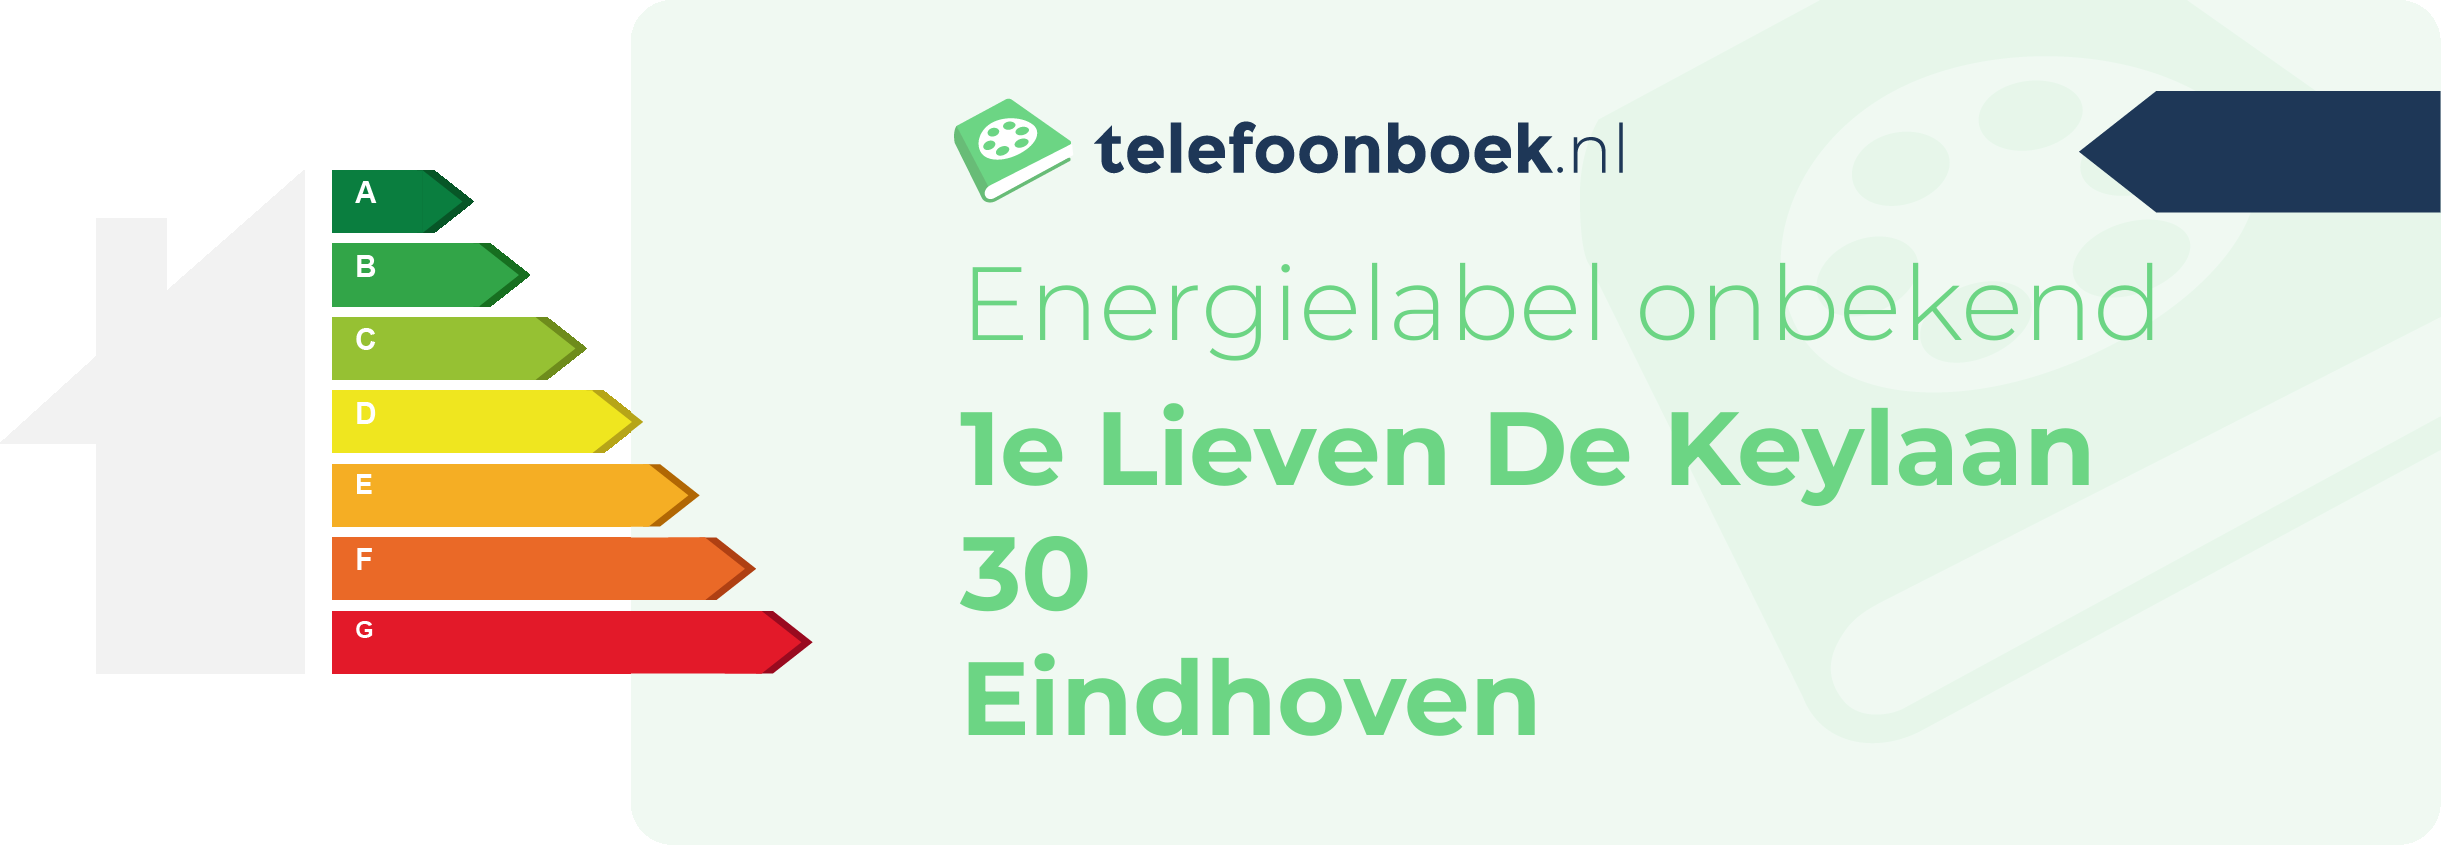 Energielabel 1e Lieven De Keylaan 30 Eindhoven